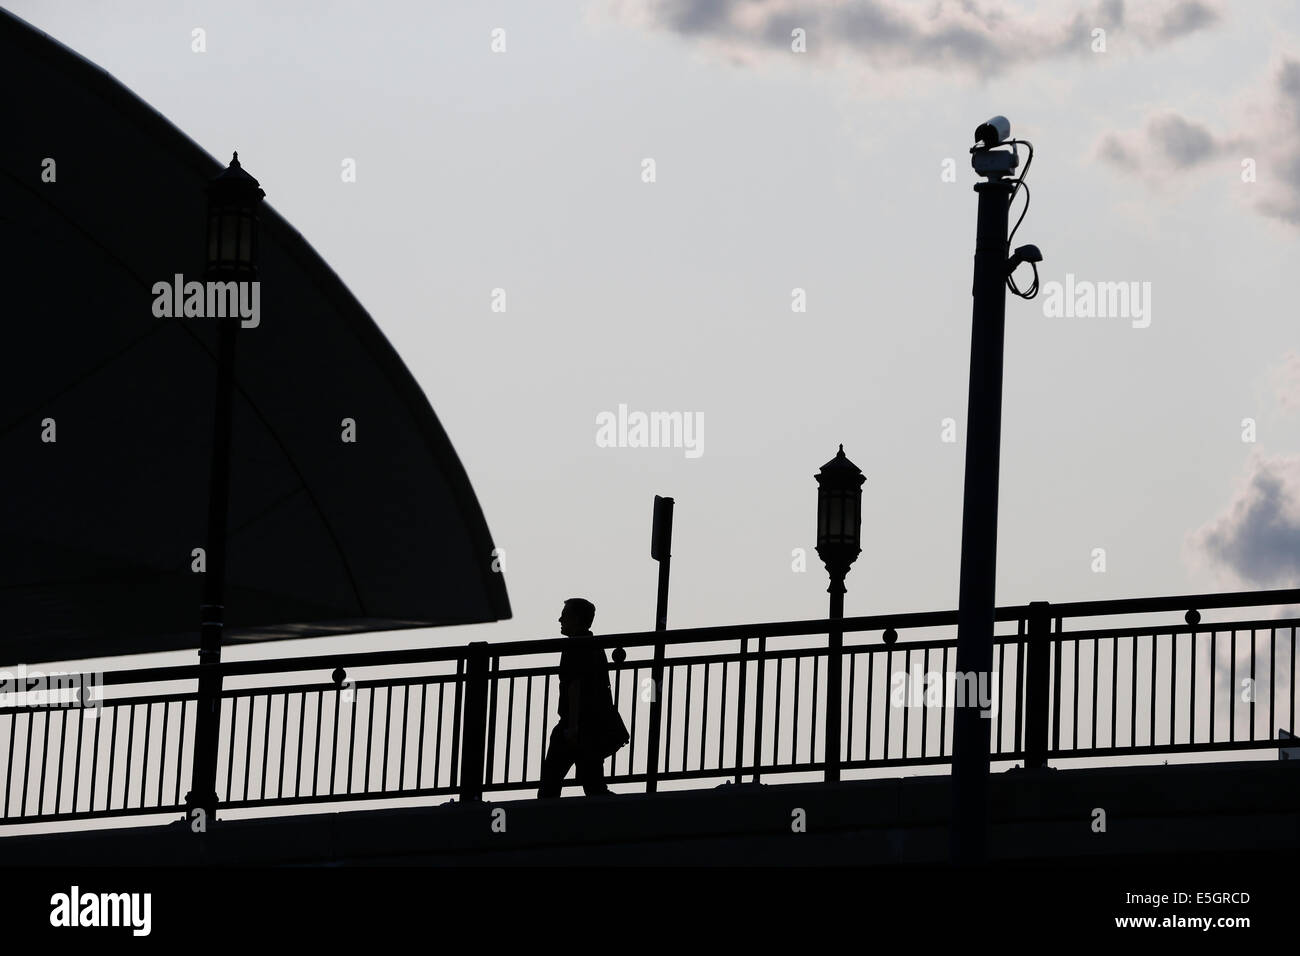 Ein Fußgänger in der Silhouette Spaziergänge unter einer Mast montierte Überwachungskamera. Boston, Massachusetts, Vereinigte Staaten Stockfoto